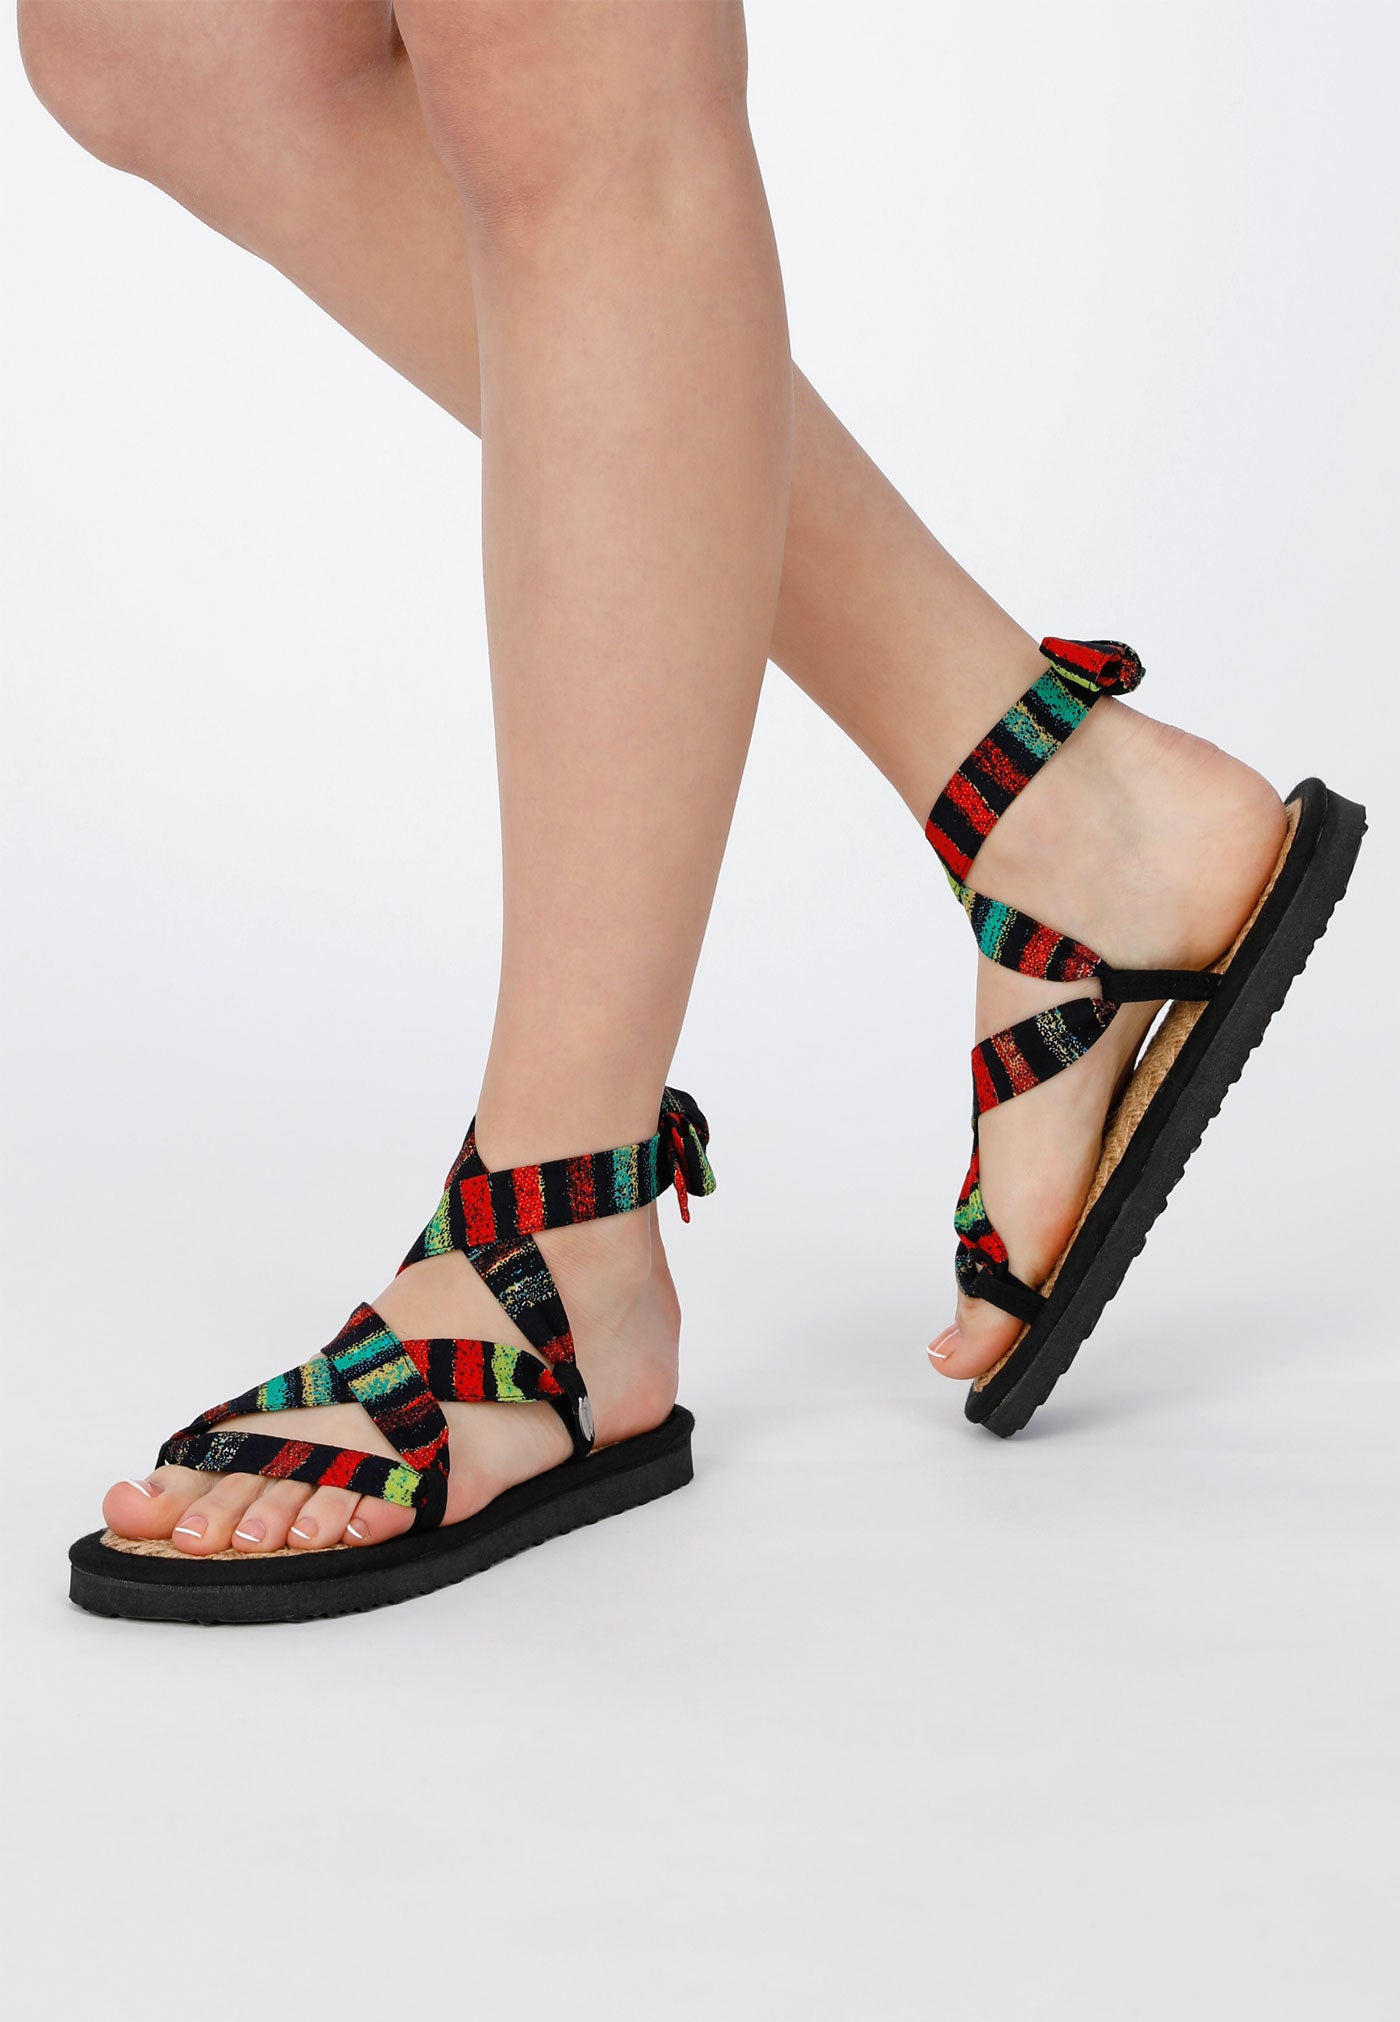 Sandale mit verstellbaren Riemchen aus buntem Stoff, getragen von einem weiblichen Modell, von der Seite